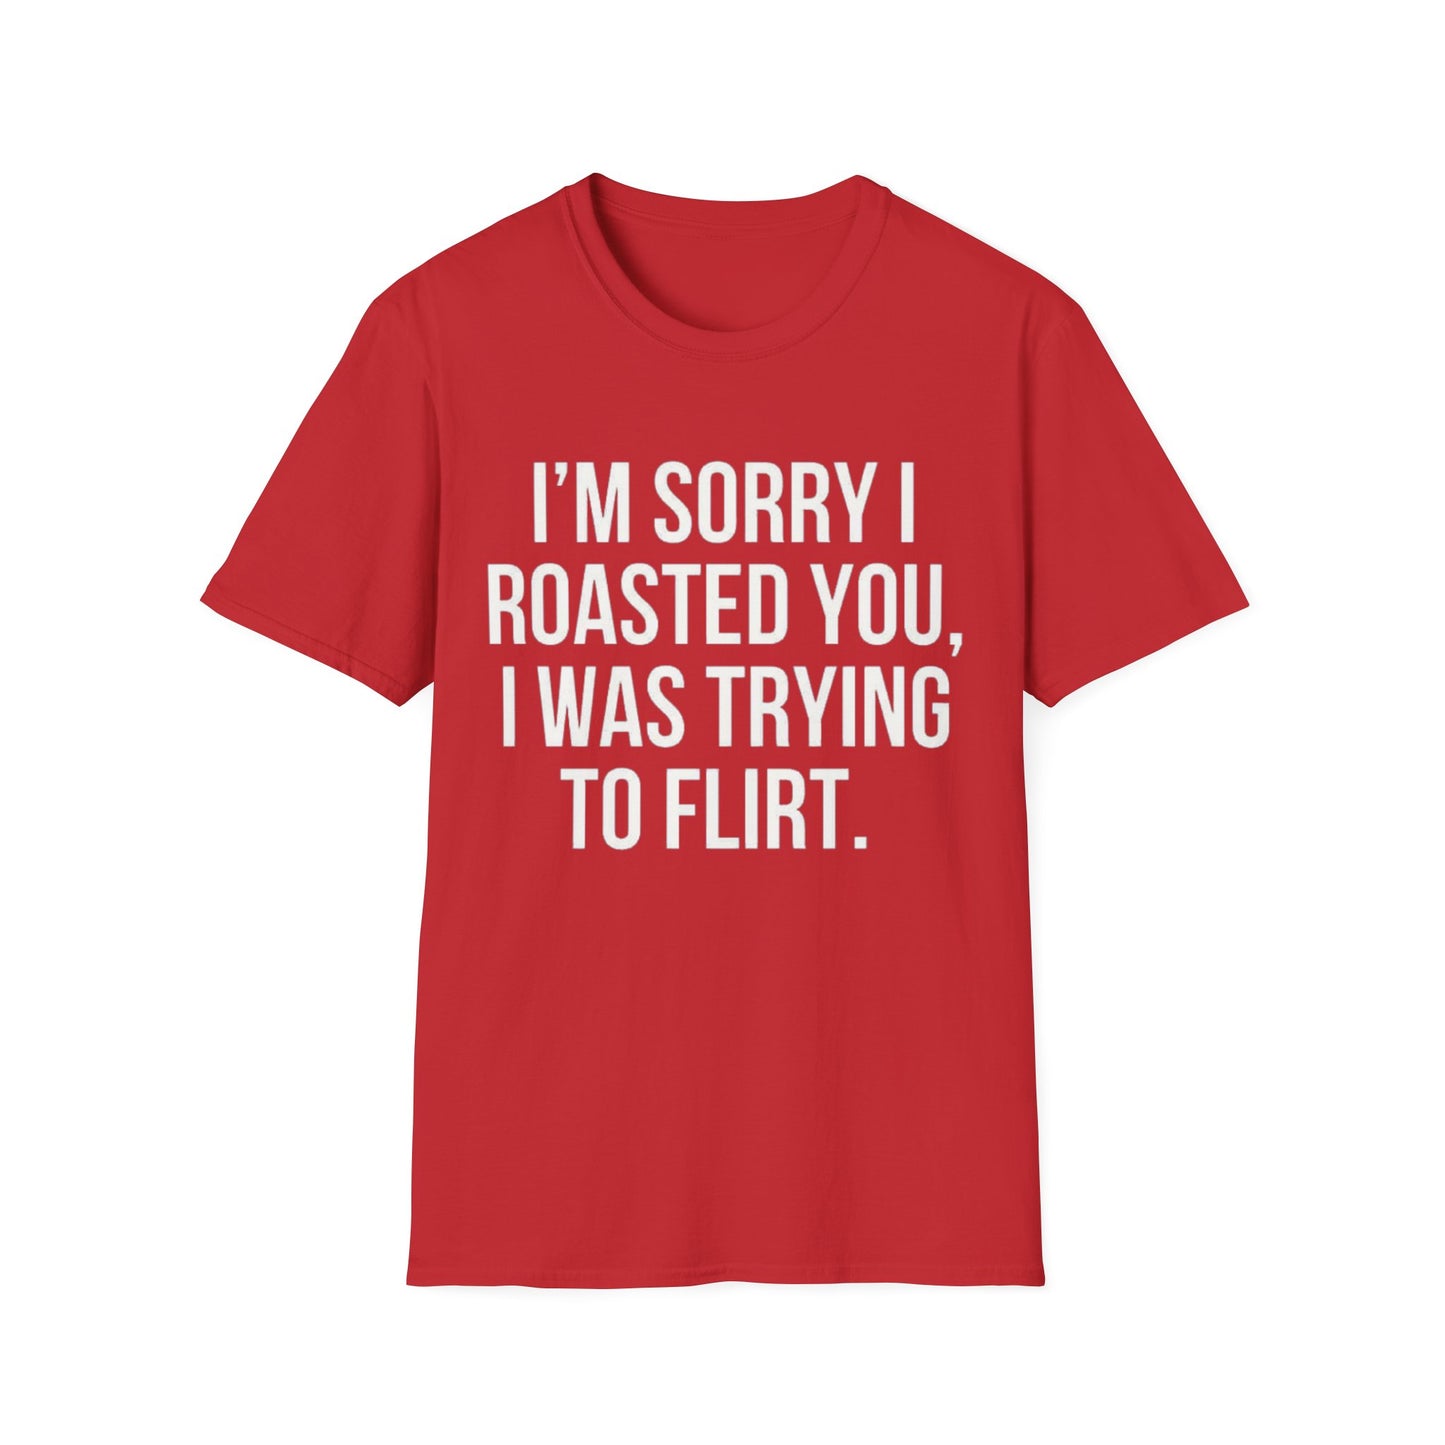 I’m sorry I roasted you, I was trying to flirt - Unisex Softstyle T-Shirt